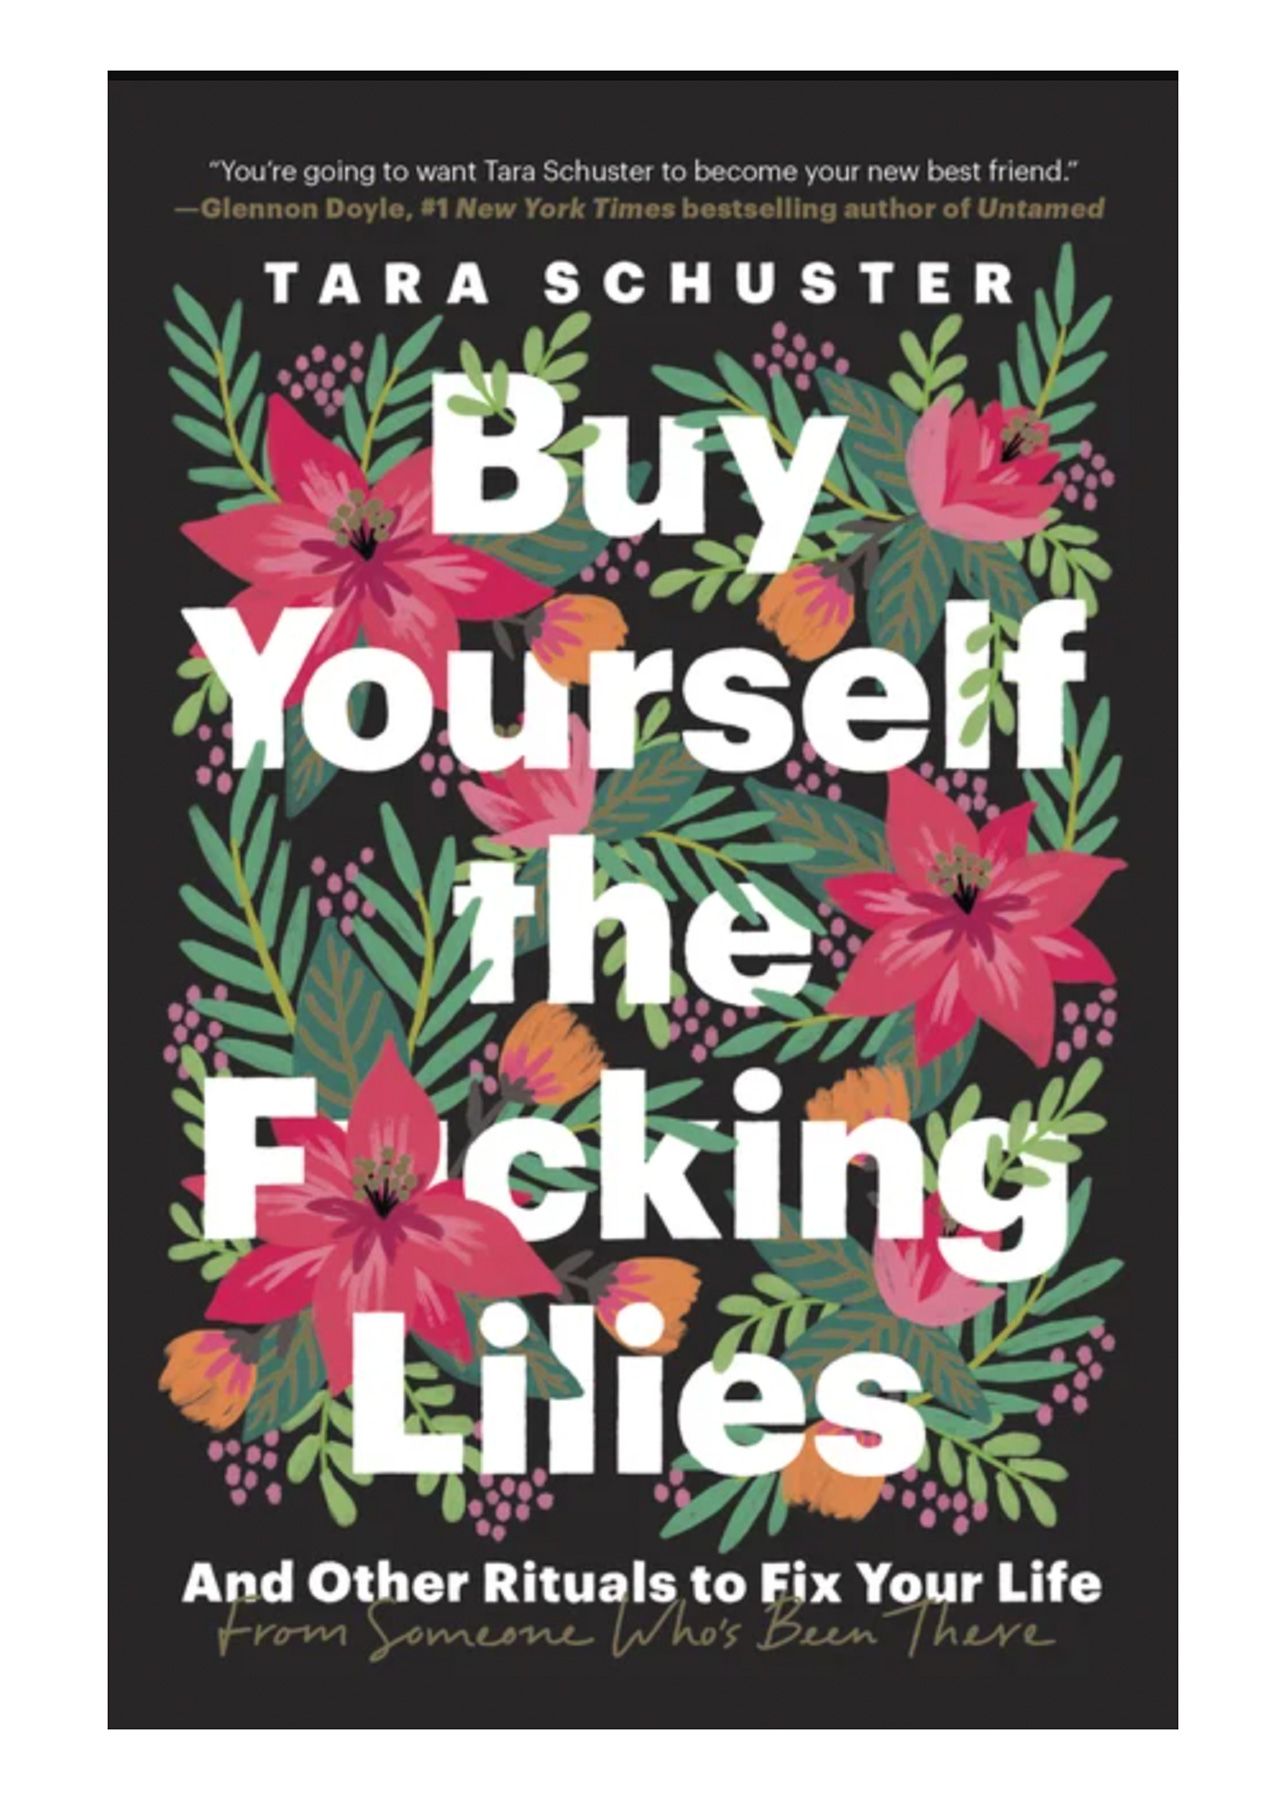 หนังสือดีที่ควรอ่านในยุค 20 ของคุณ: ซื้อ F*cking Lilies ให้ตัวเอง โดย Tara Schuster